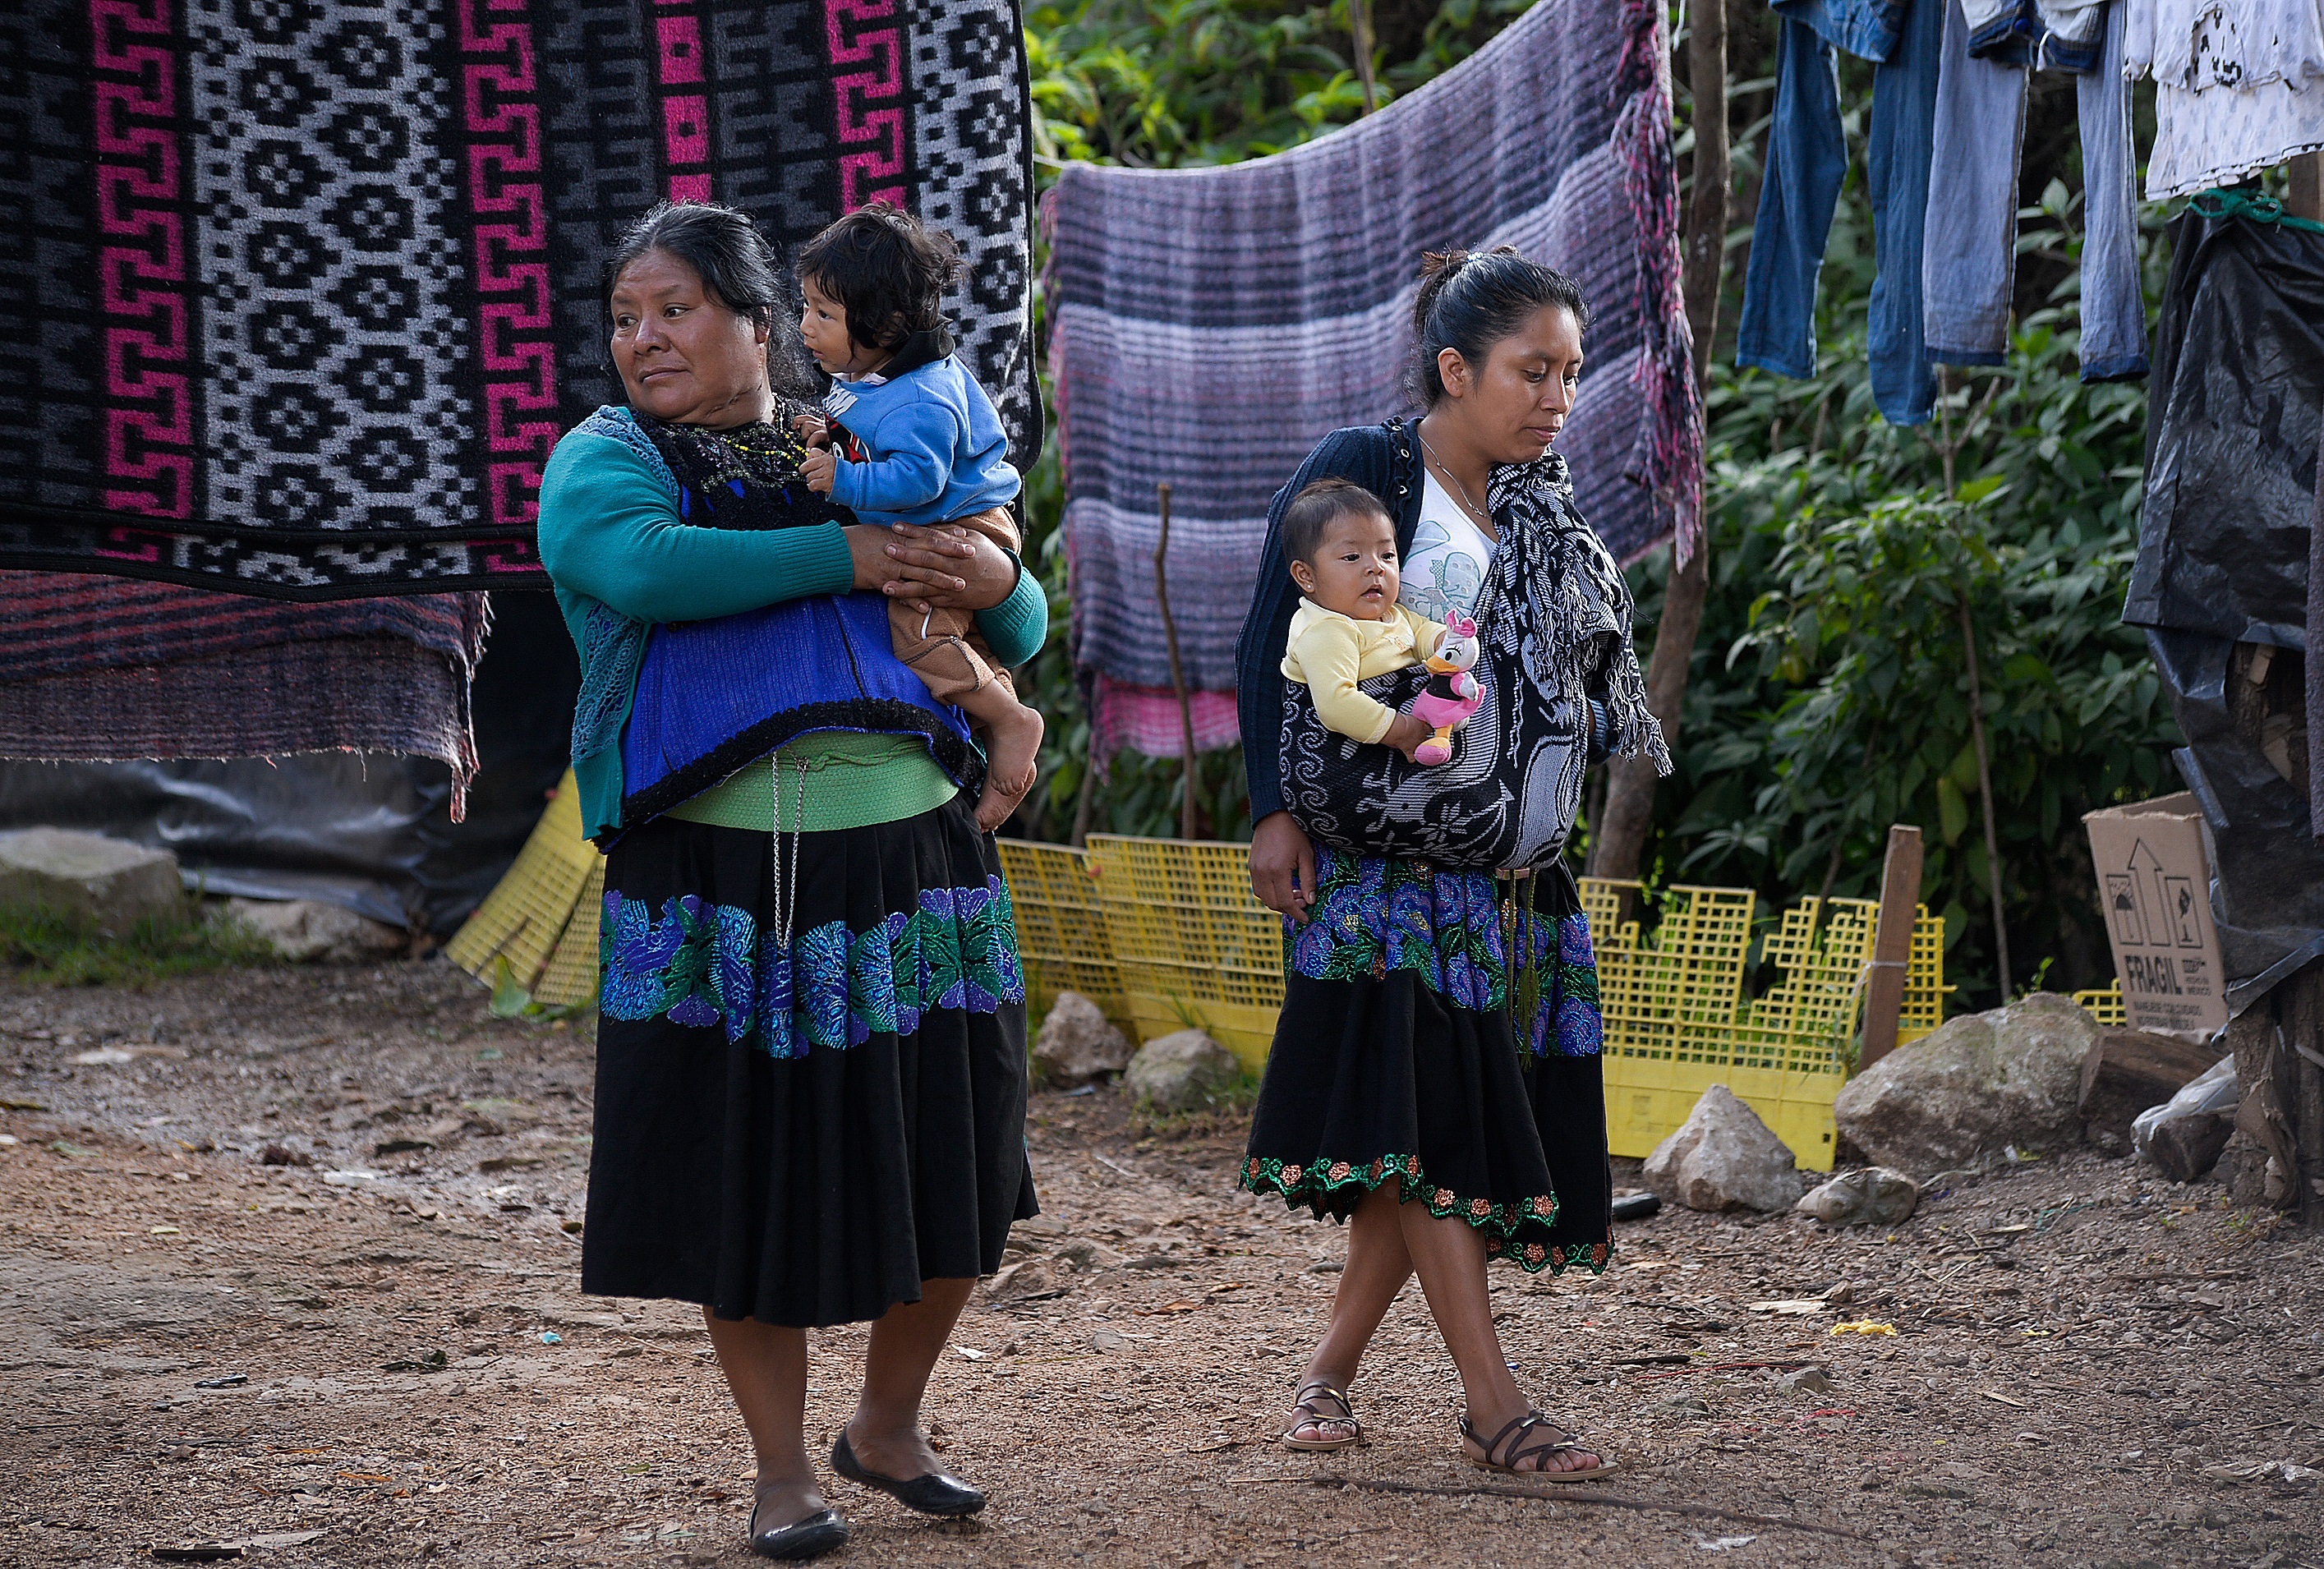 Fotograf&#237;a de mujeres Tzotziles con su hijos el 8 de agosto de 2020 en San Crist&#243;bal de las Casas en el estado de Chiapas (M&#233;xico). EFE/Carlos L&#243;pez
